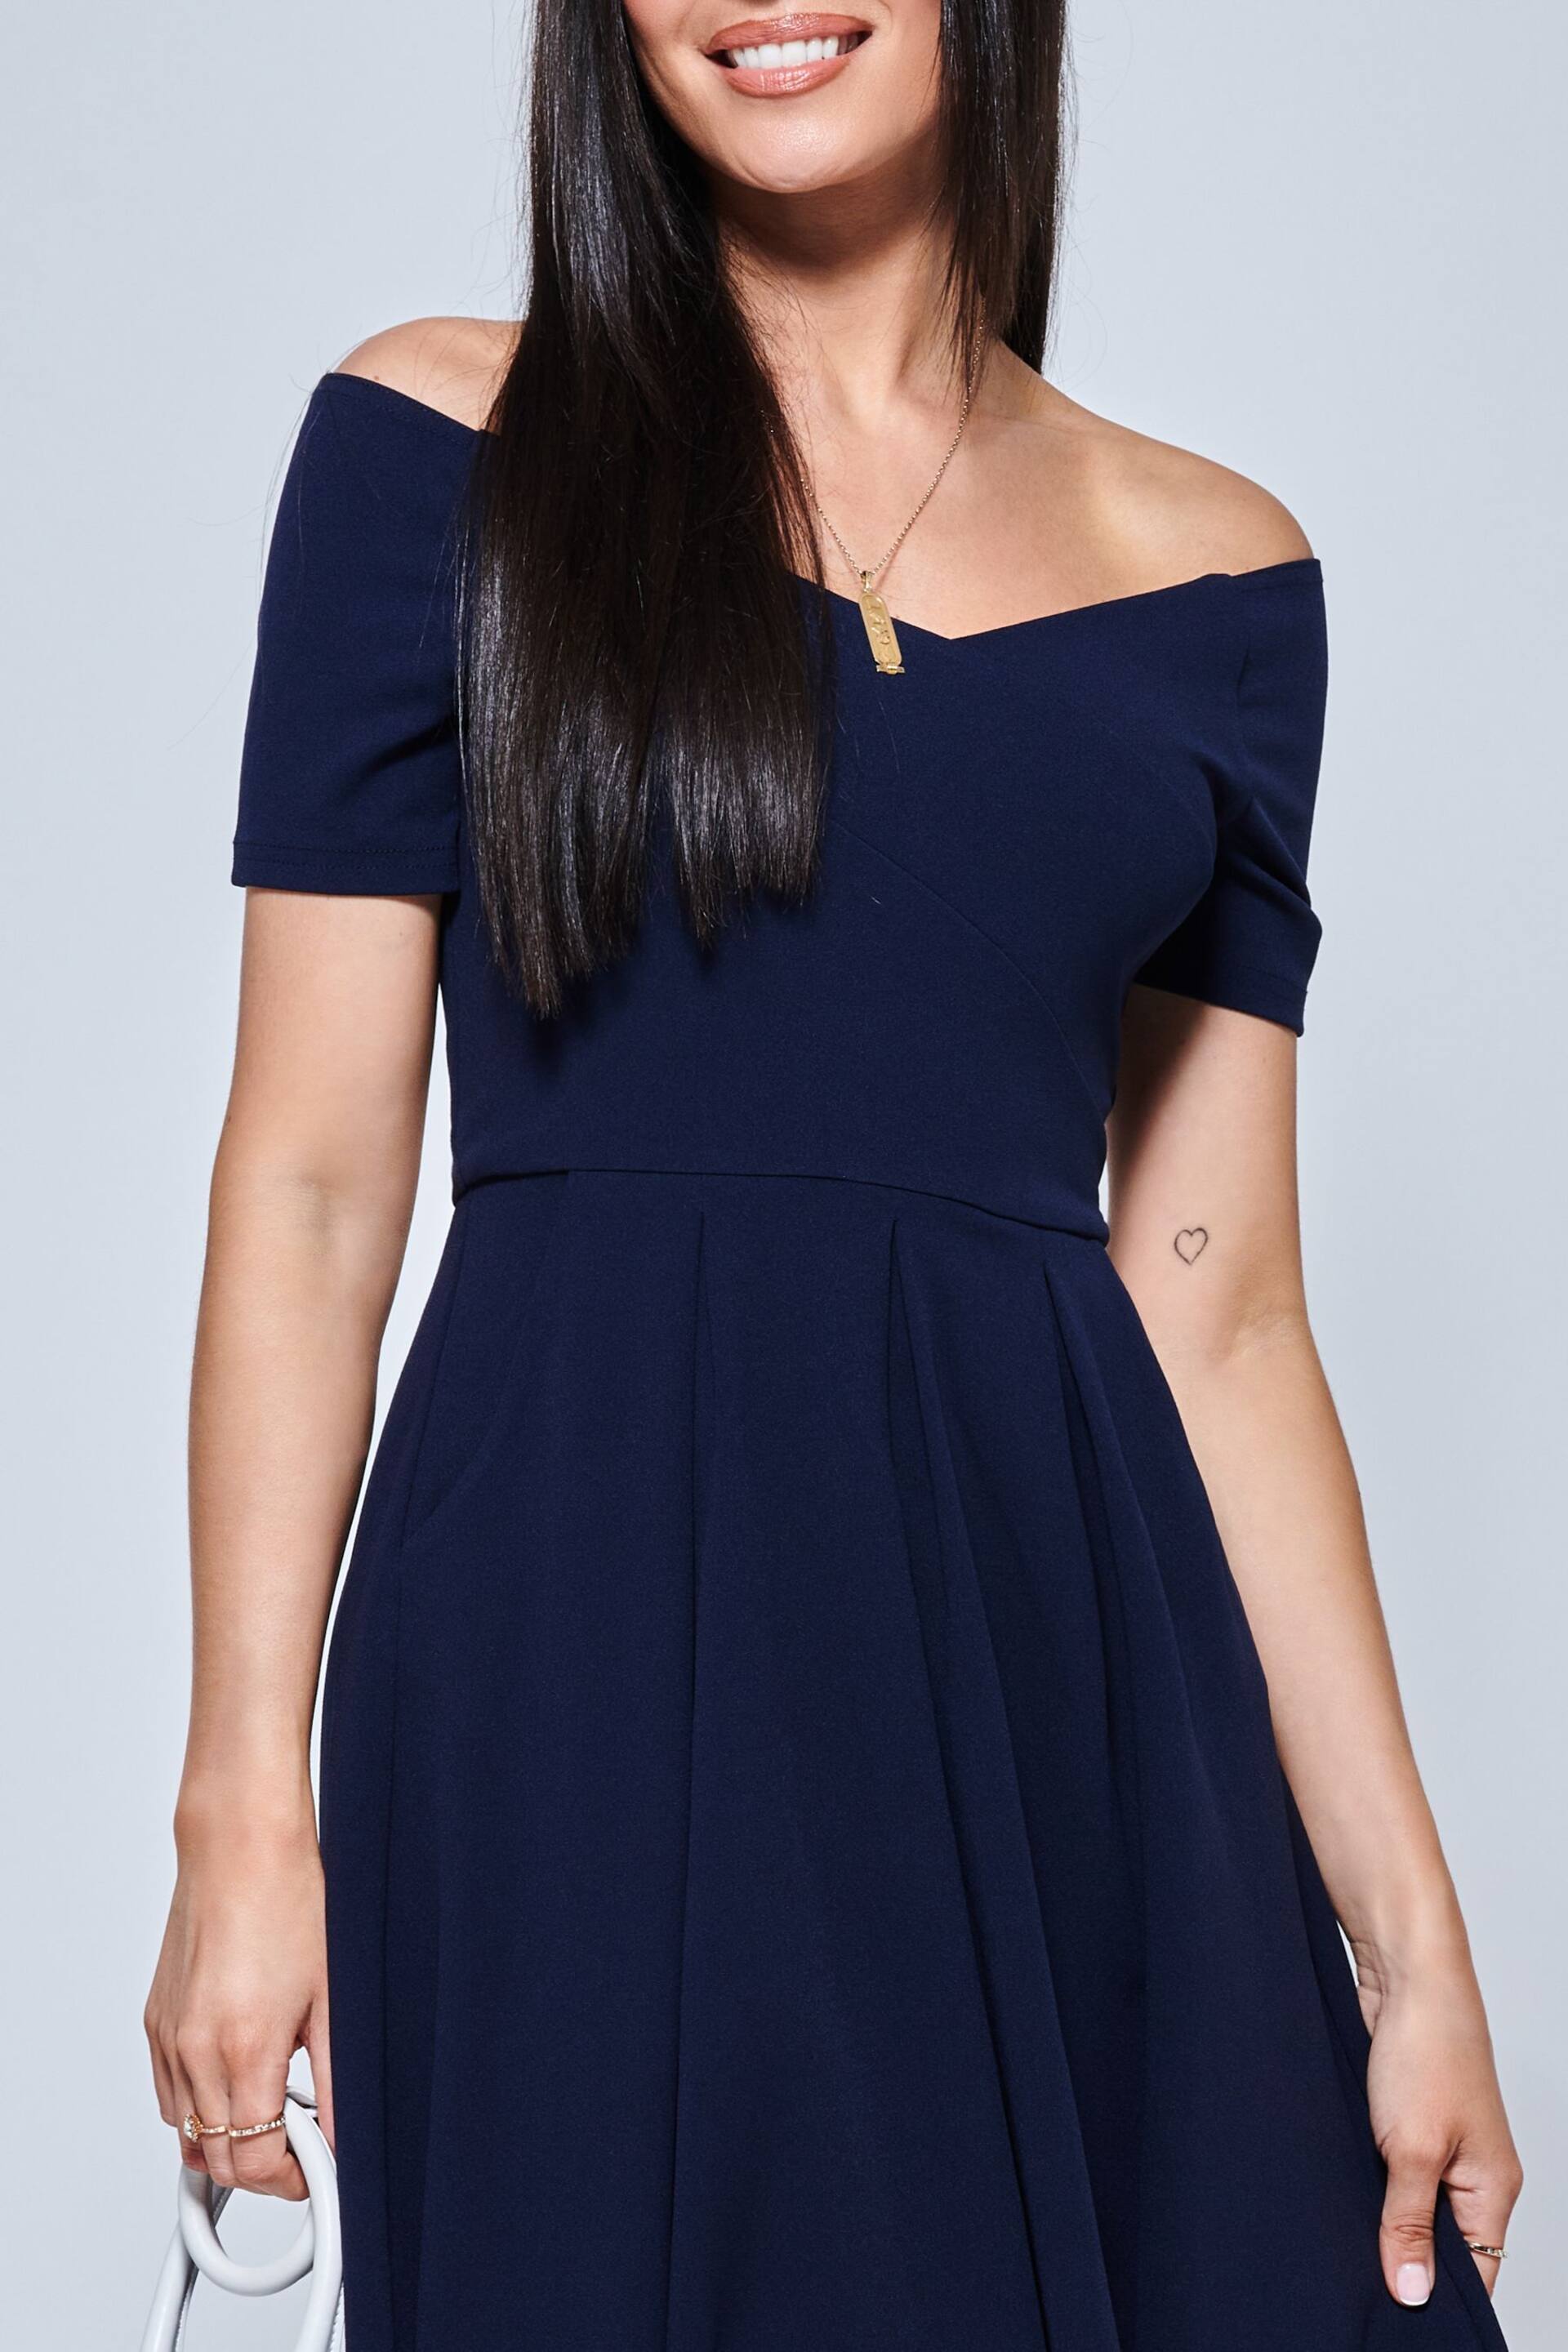 Jolie Moi Navy Blue Lenora Fit & Flare Midi Dress - Image 5 of 5